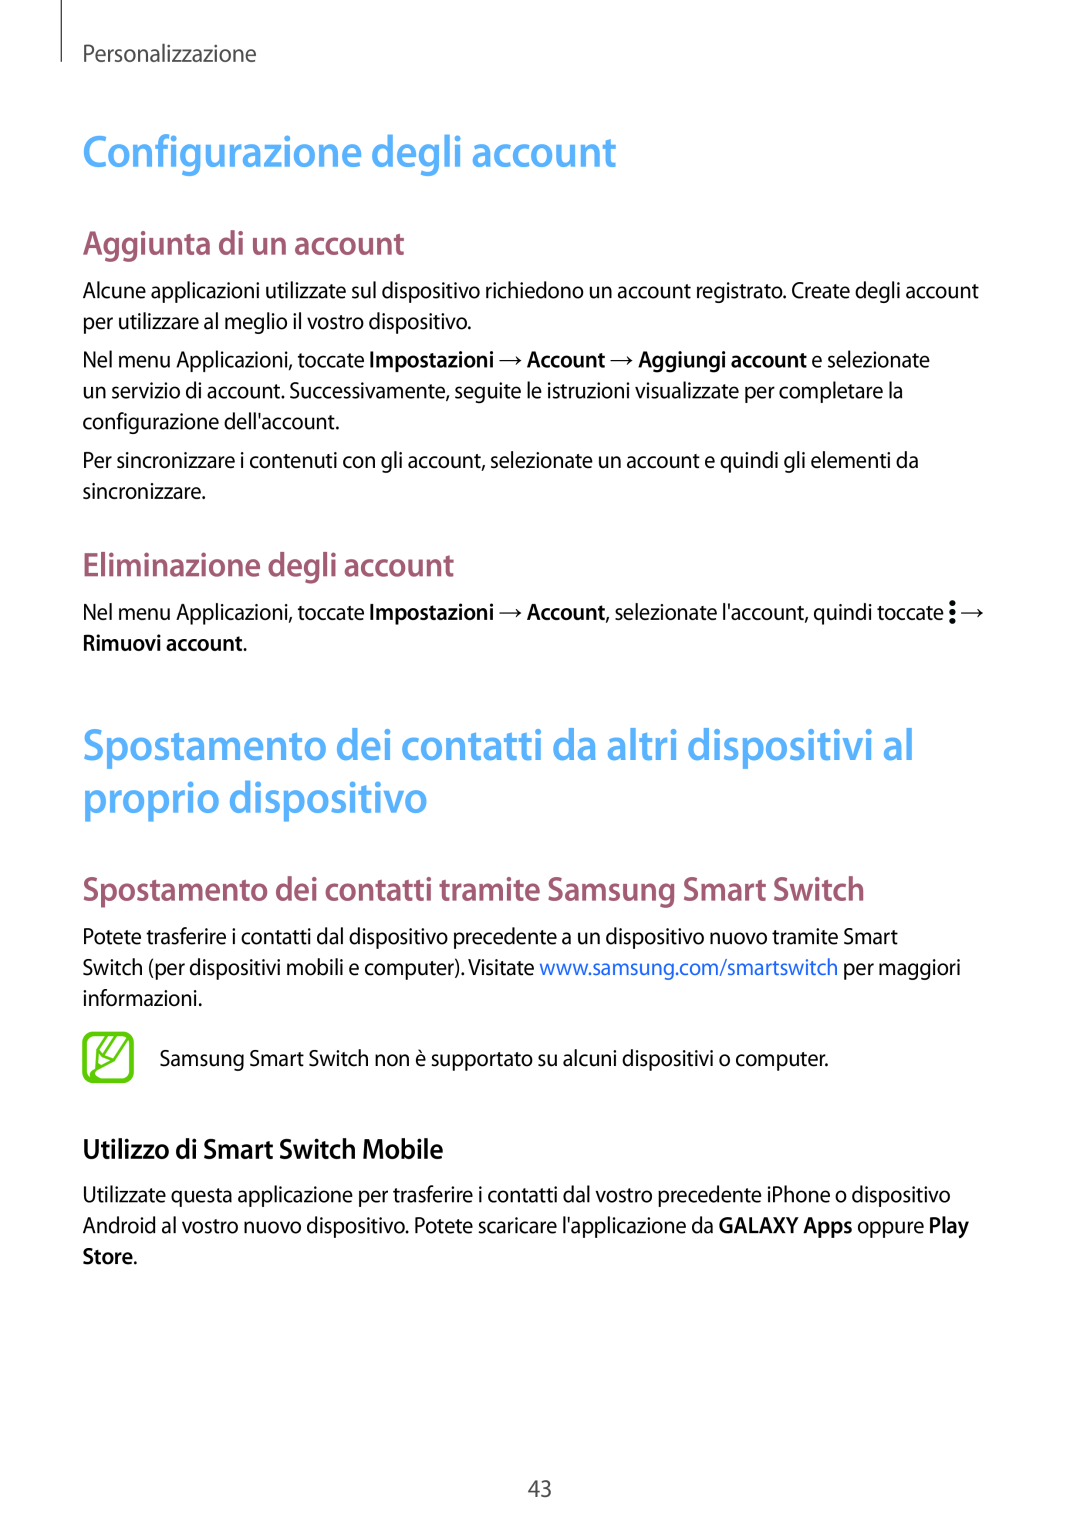 Samsung SM-G900FZKAORX Configurazione degli account, Spostamento dei contatti da altri dispositivi al proprio dispositivo 